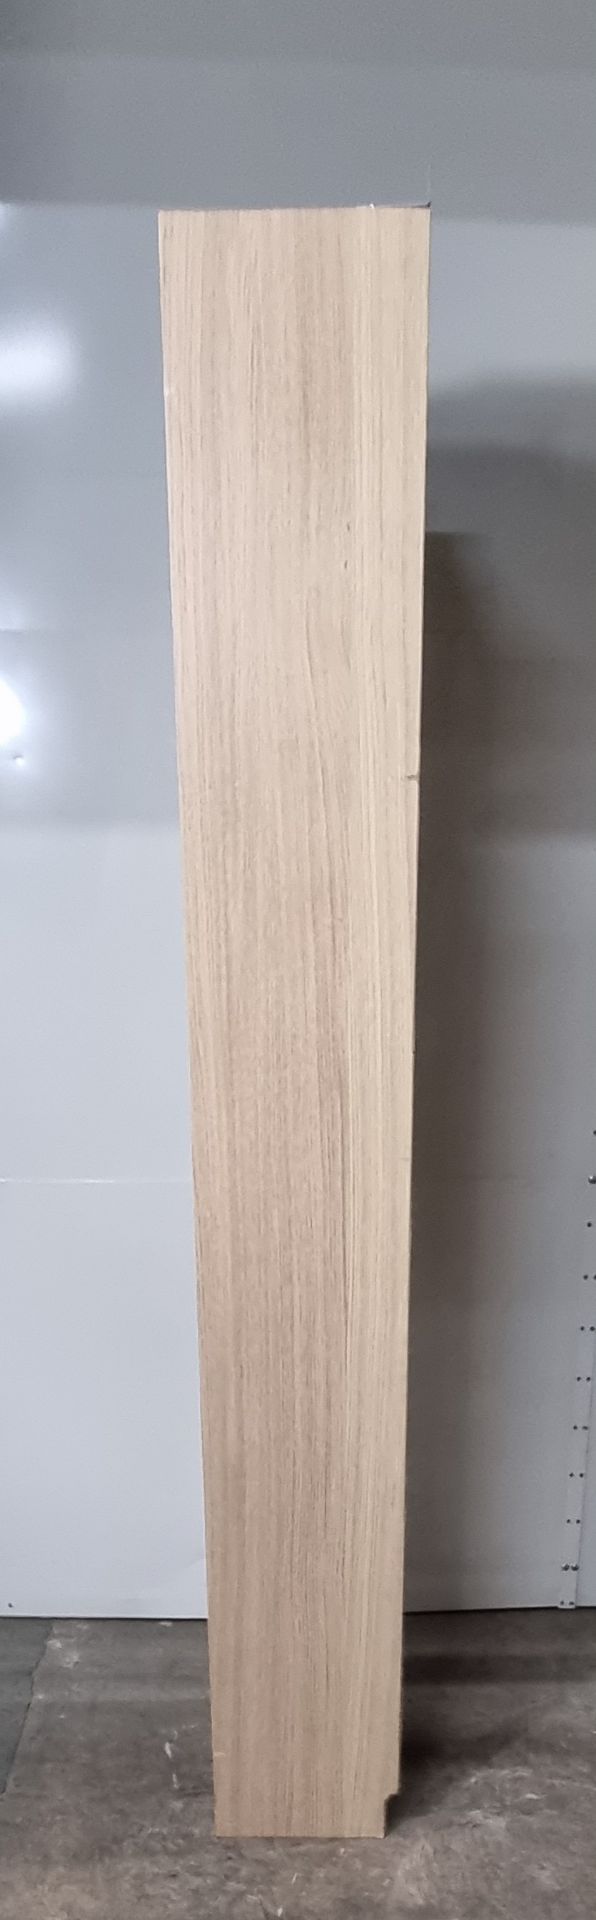 Ikea Billy Oak Effect 5 Shelf Unit H2020 W400 D280 - Image 6 of 8